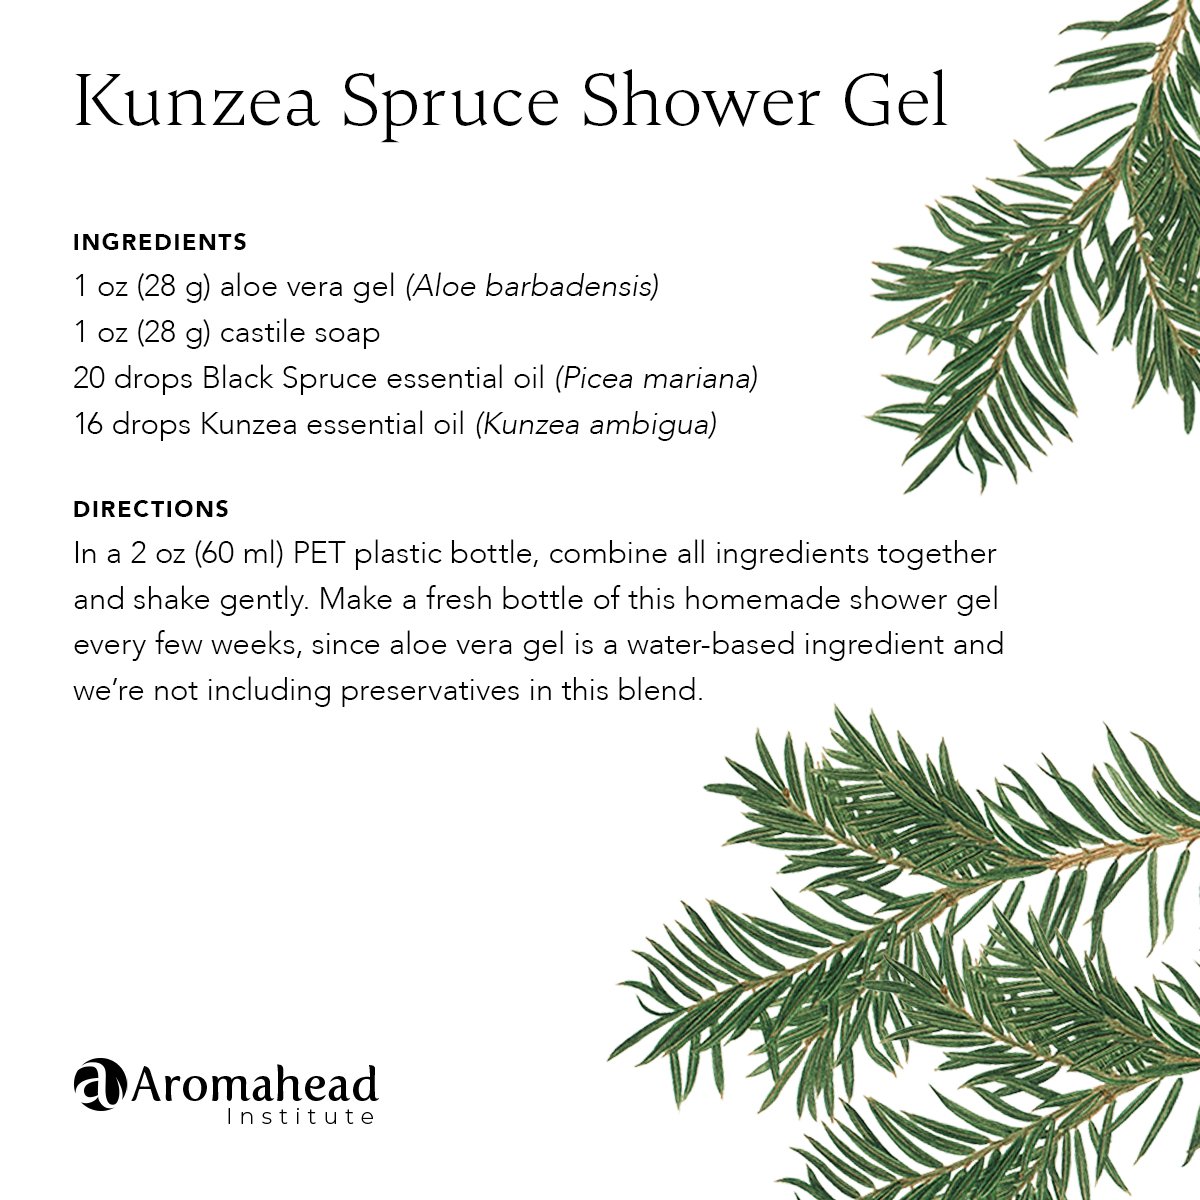 Kunzea Spruce Shower Gel Recipe